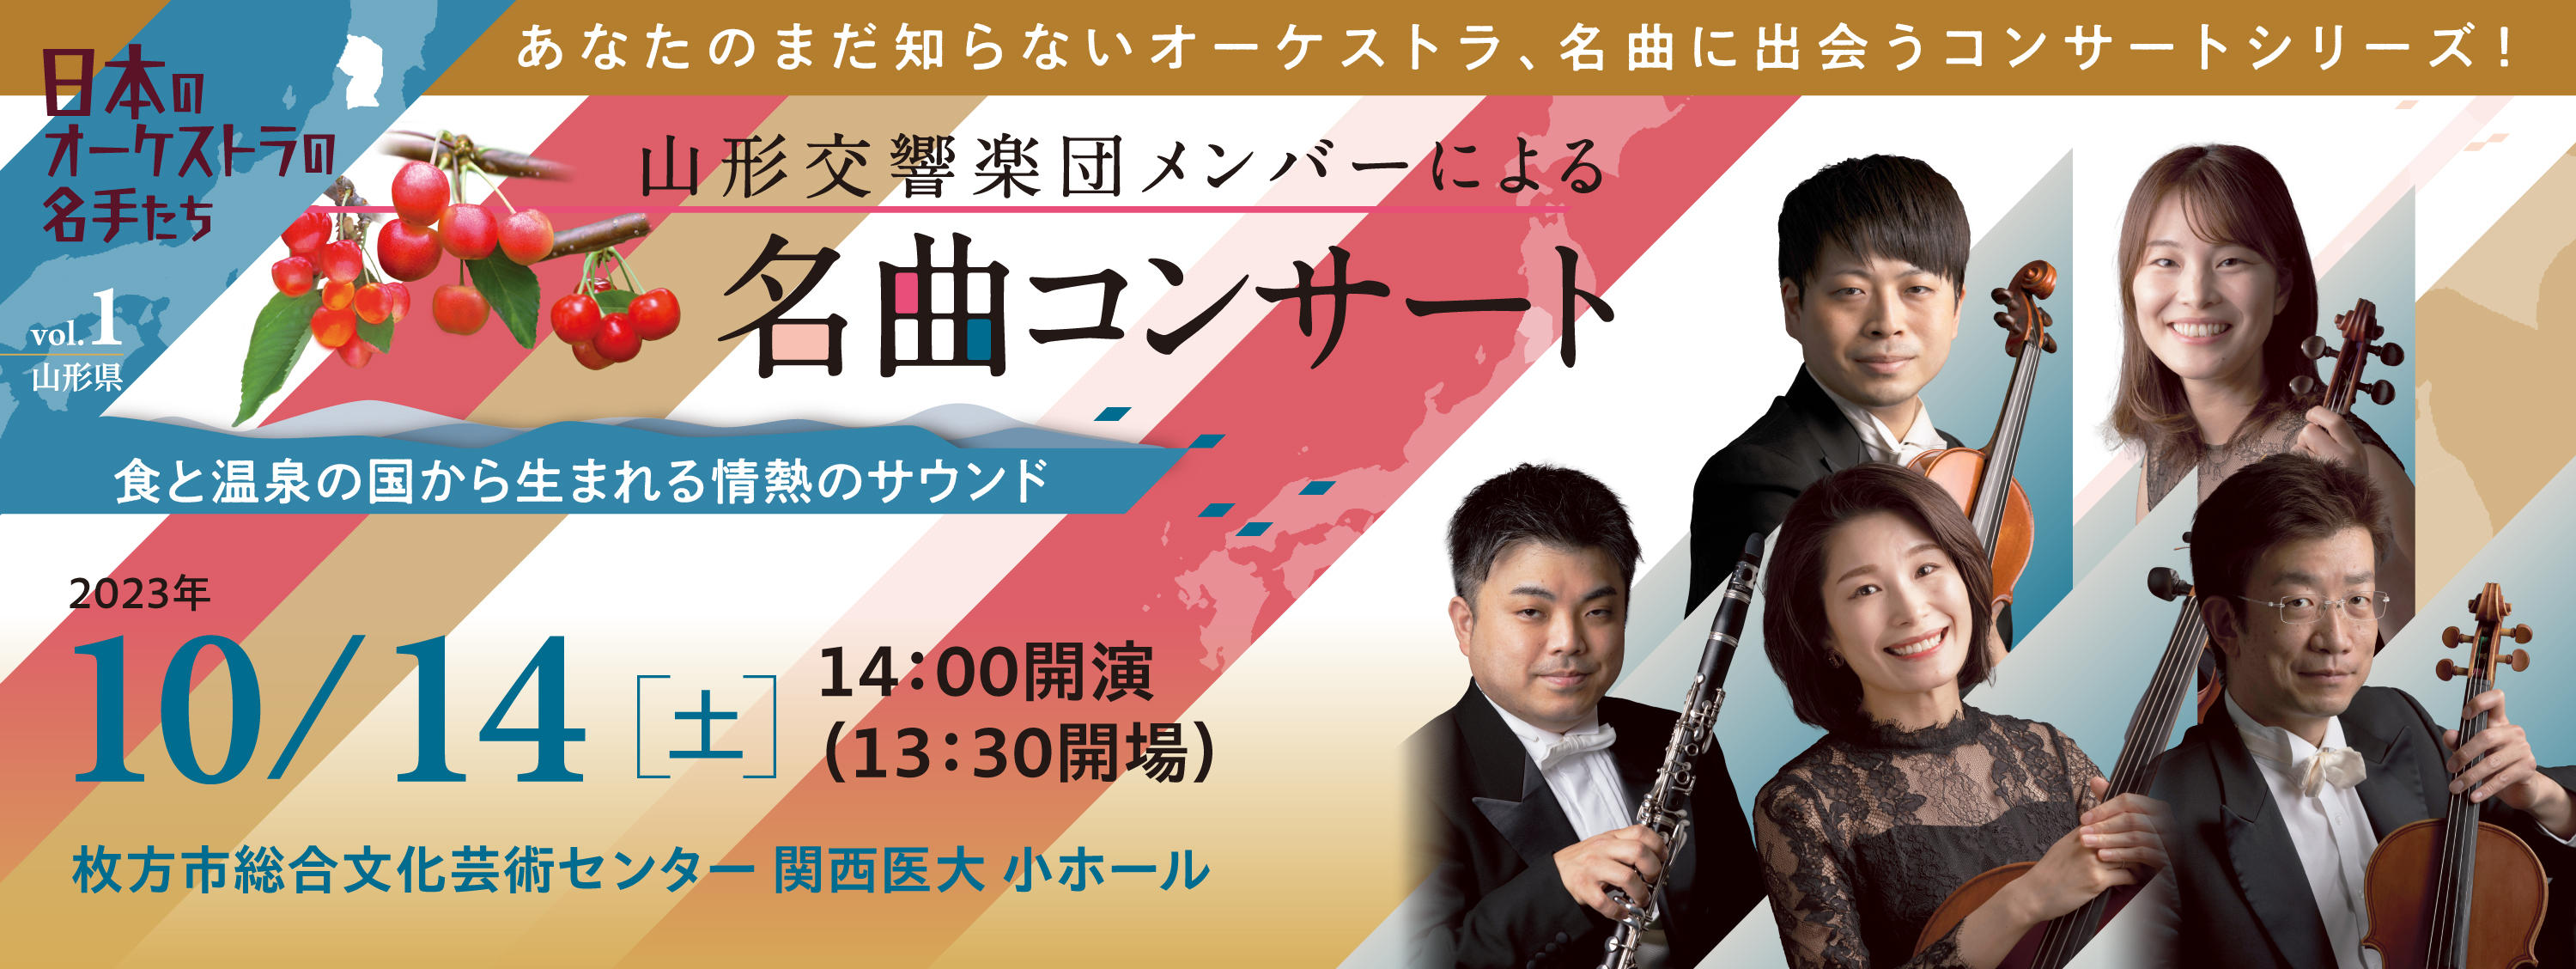 日本のオーケストラの名手たち Vol.1  山形交響楽団メンバーによる「名曲コンサート」